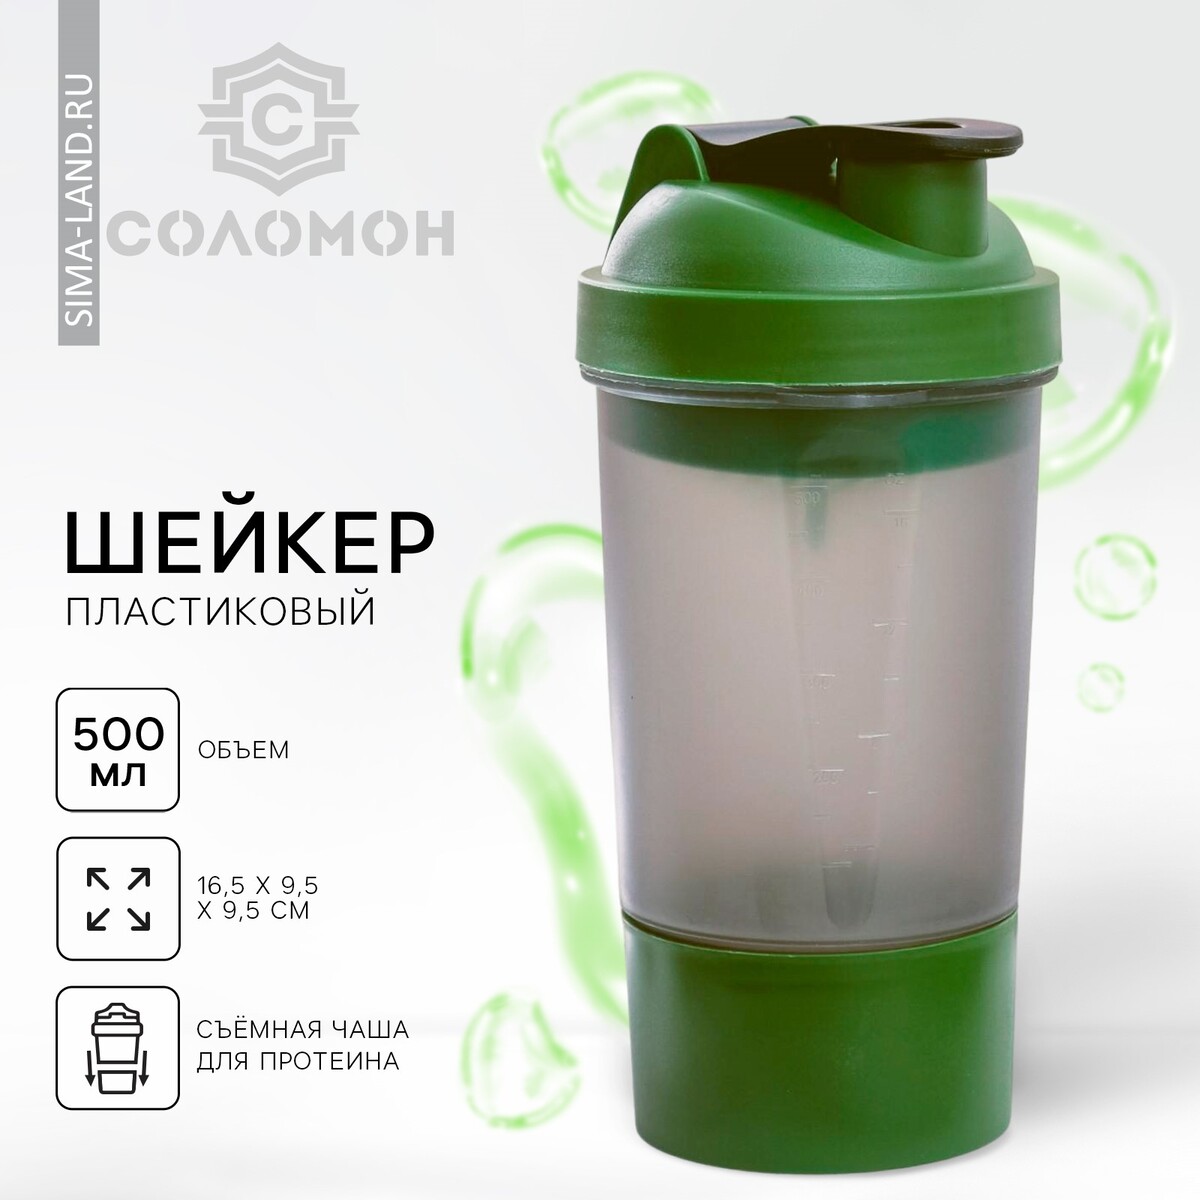 Шейкер спортивный с чашей под протеин, серо-зеленый, 500 мл спортивный топ с чашками вкладышами